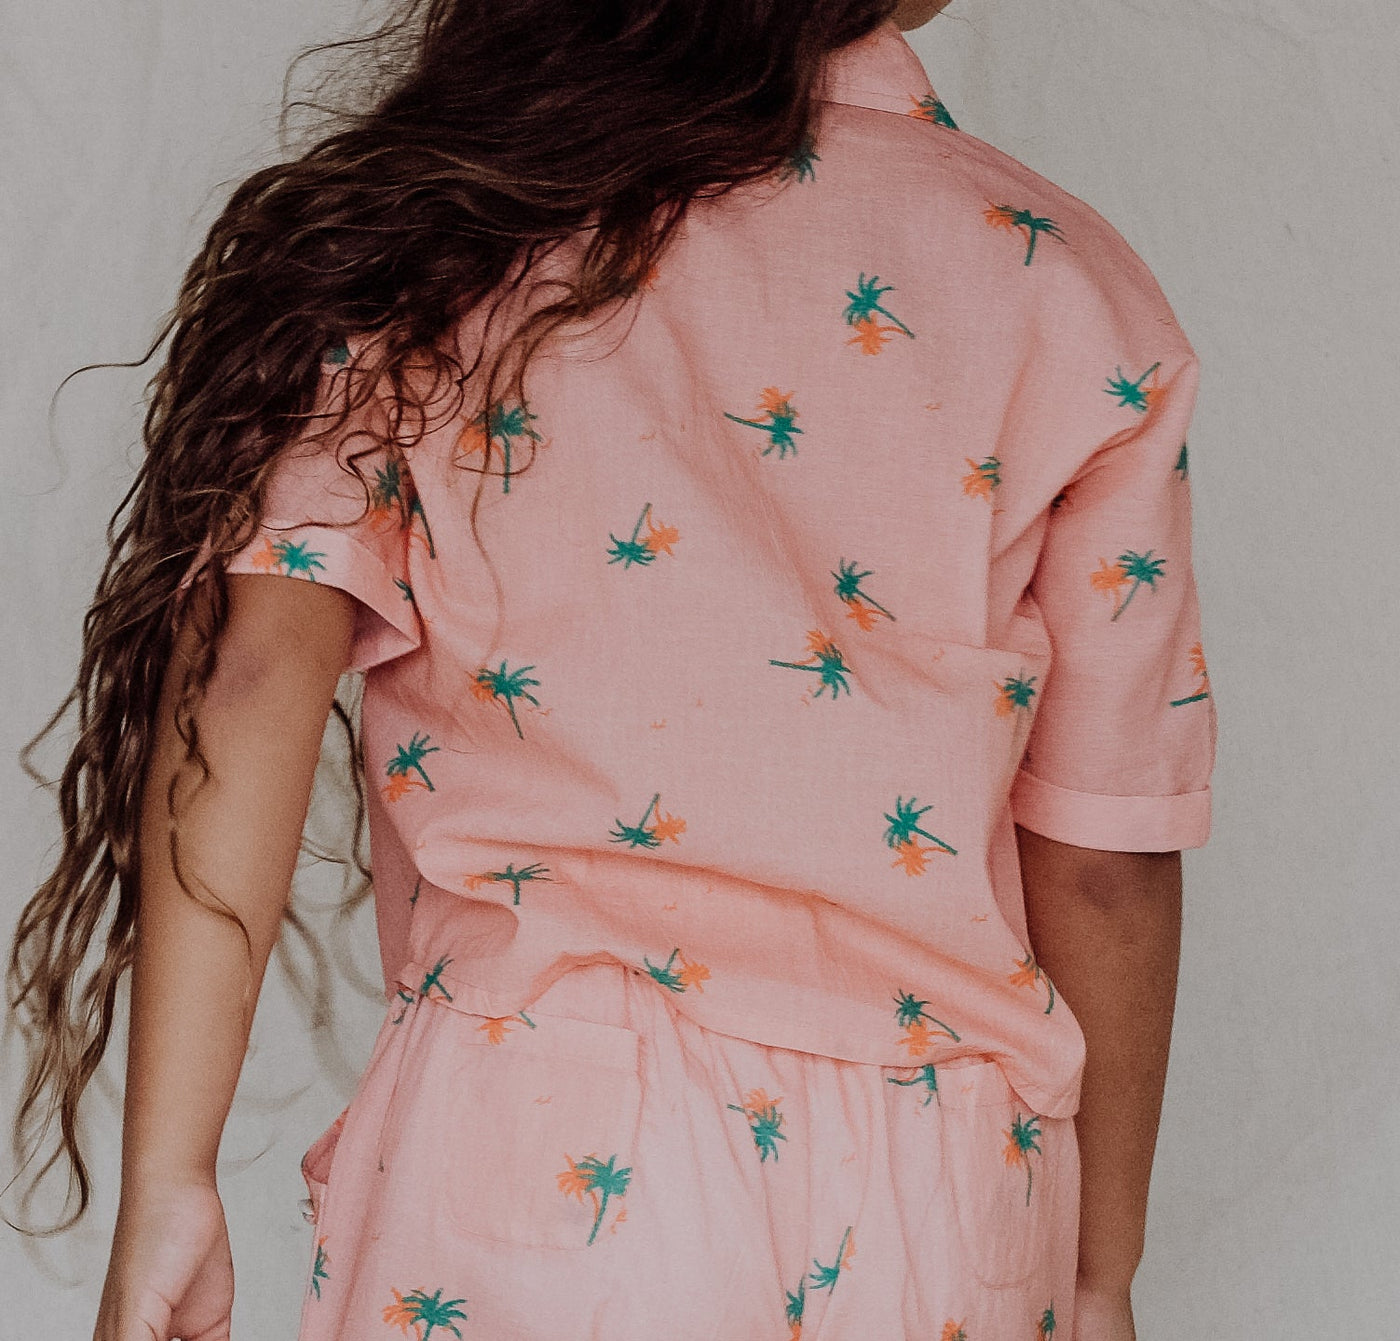 Nia Shirt - Tropical Peach Day Dream Short Sleeve Shirt Bella & Lace 